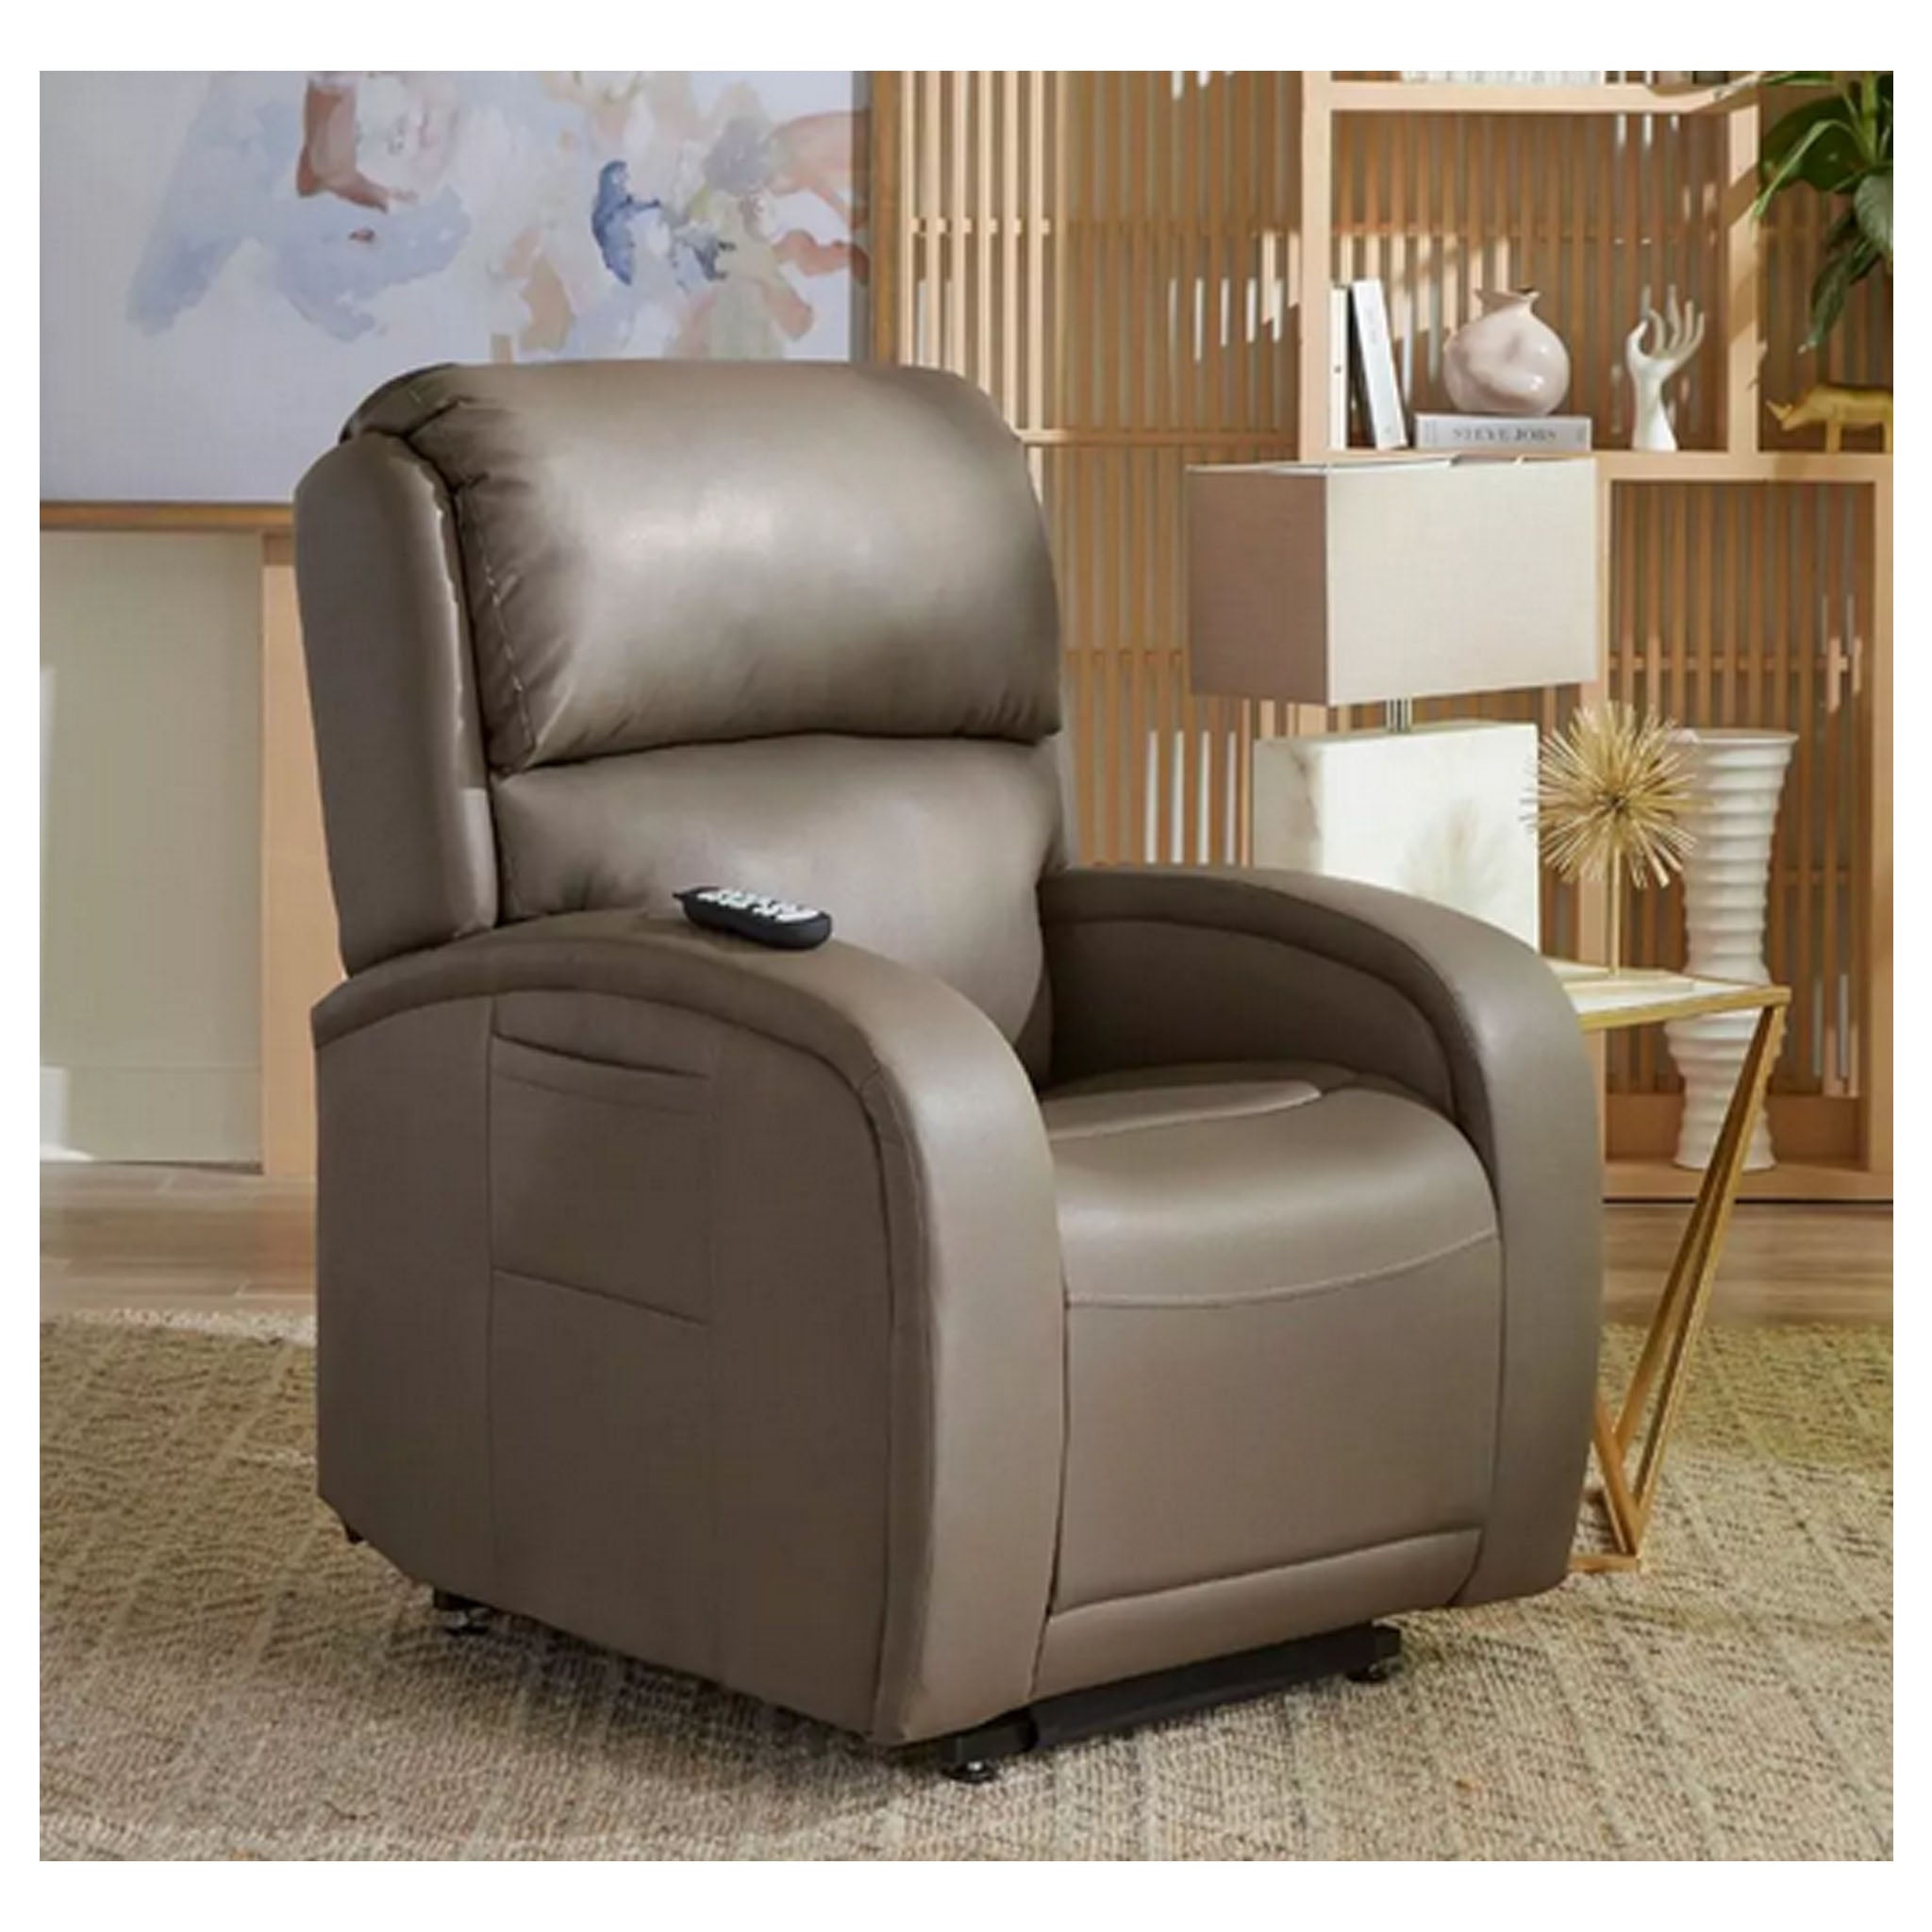 Golden Technologies PR-761 EZ Sleeper MaxiComfort Lift Chair